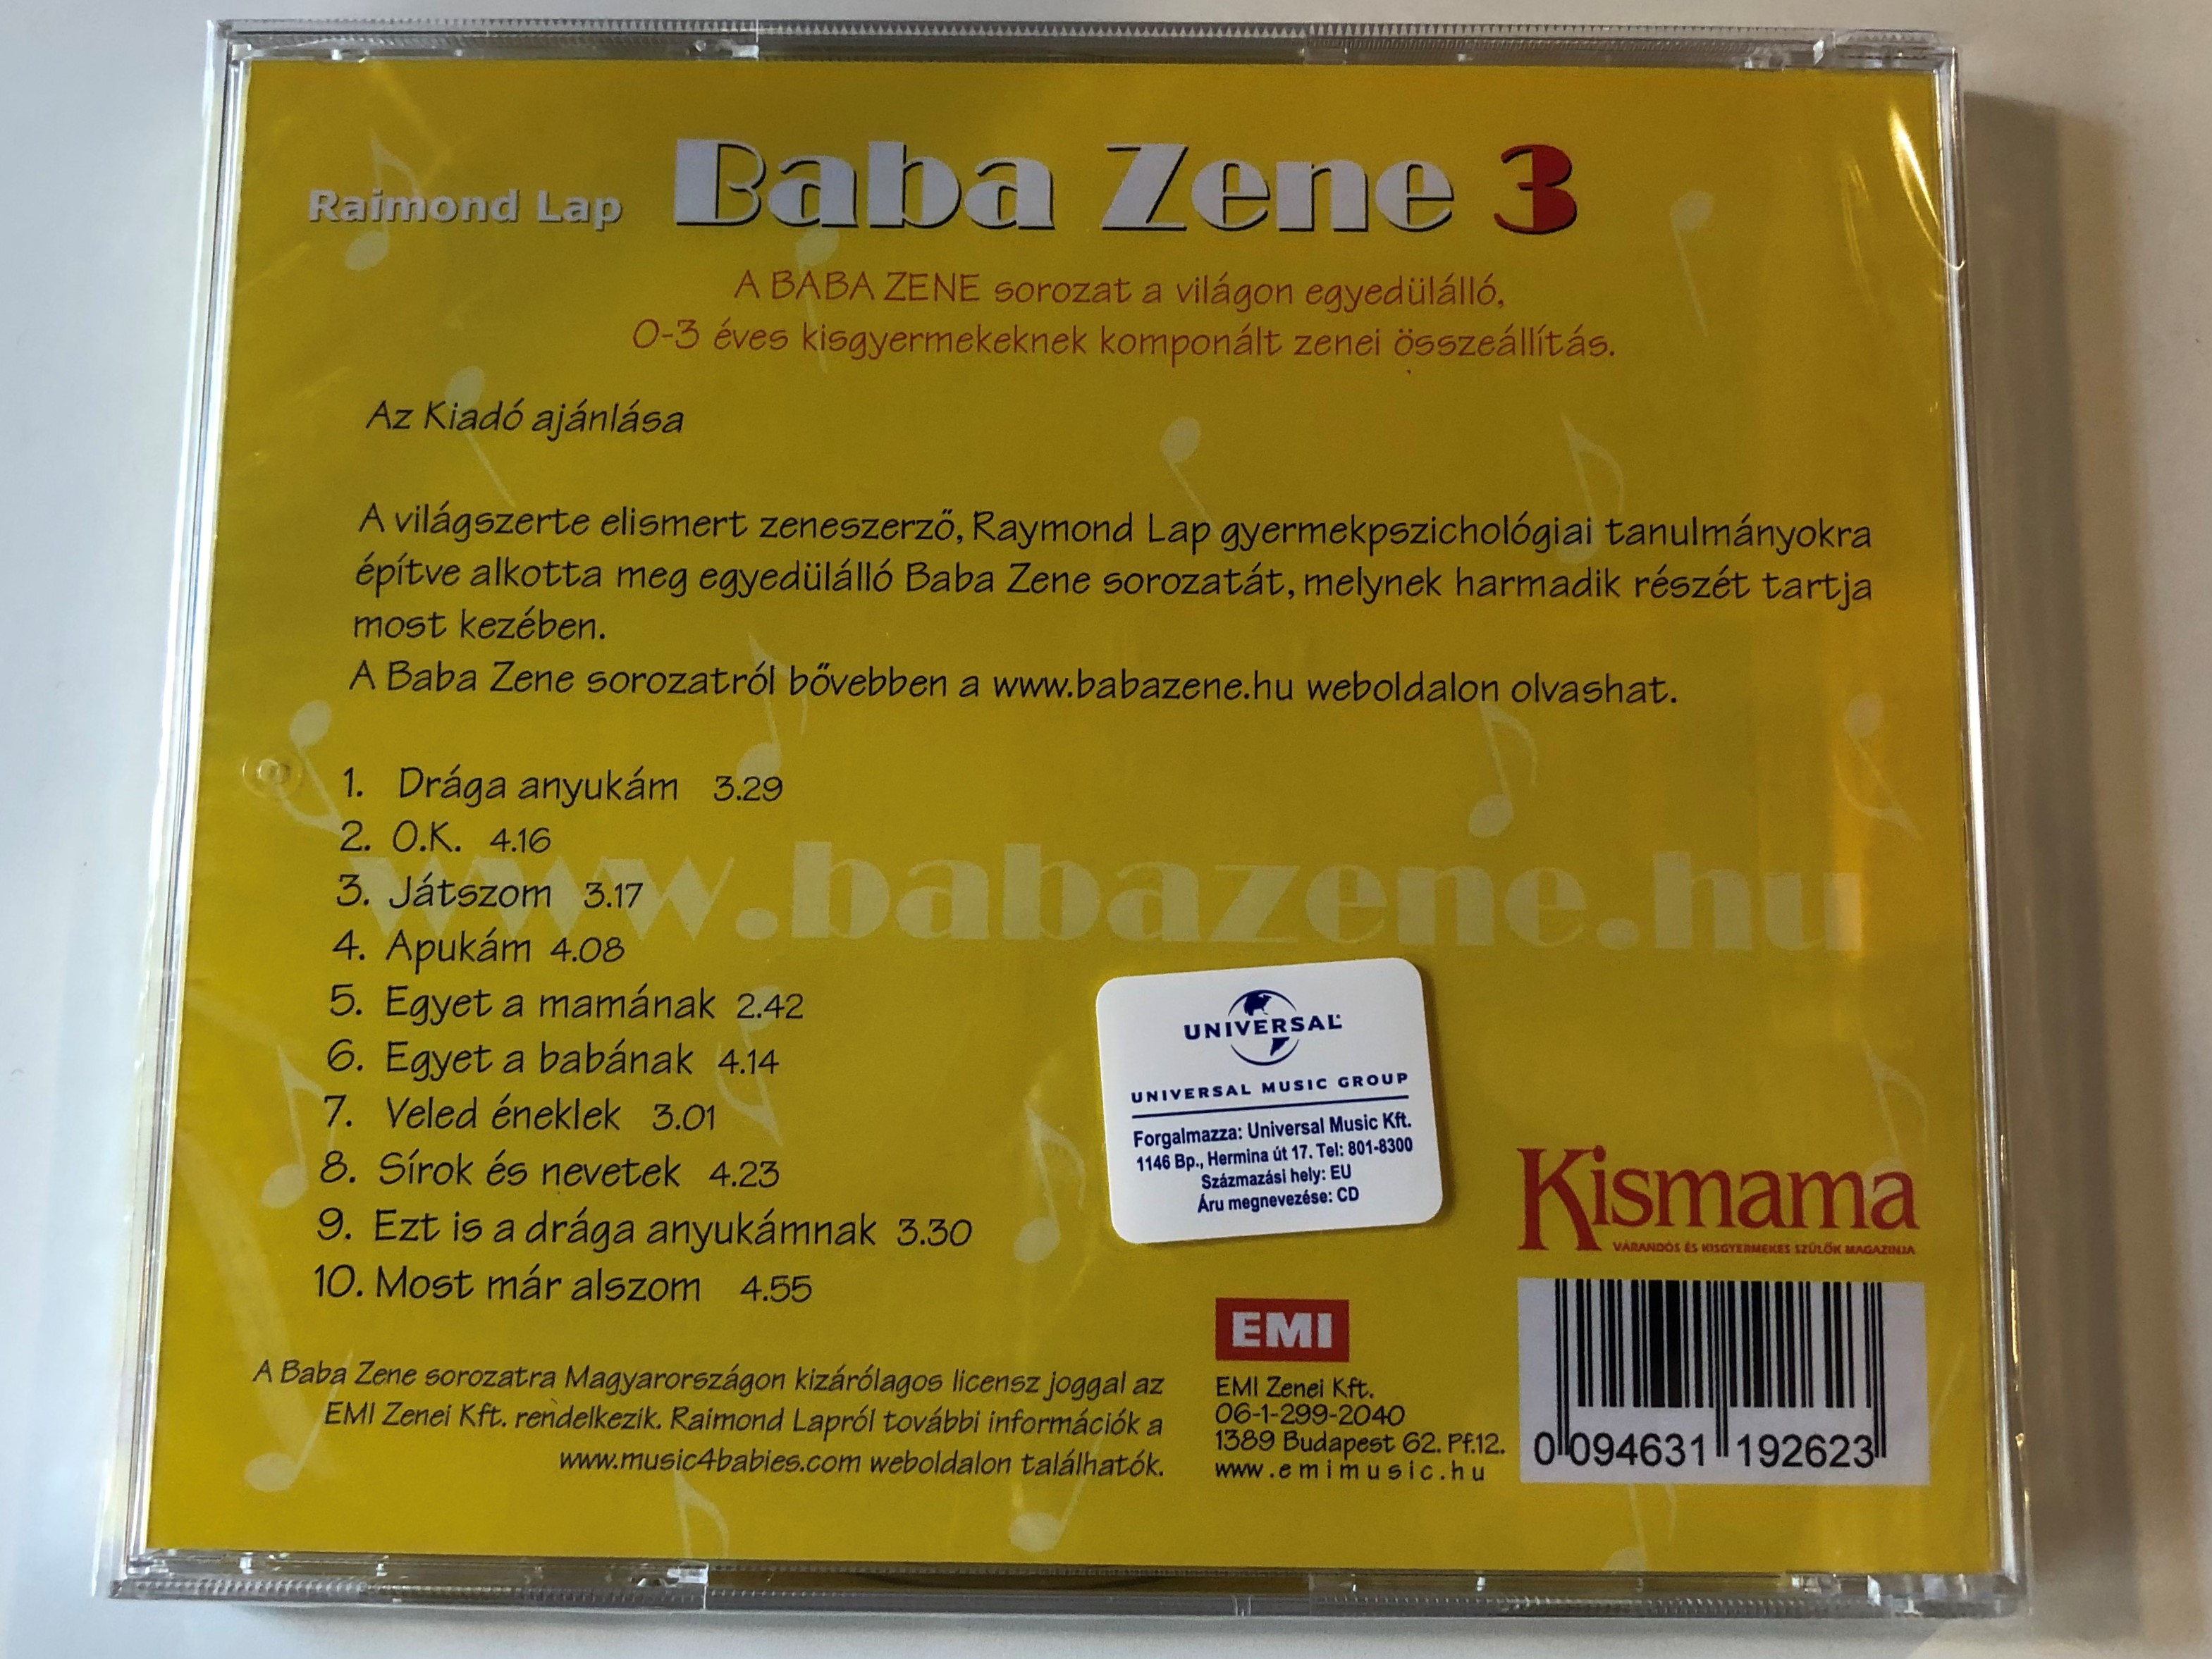 baba-zene-3.-raimond-lap-emi-audio-cd-0094631192623-2-.jpg